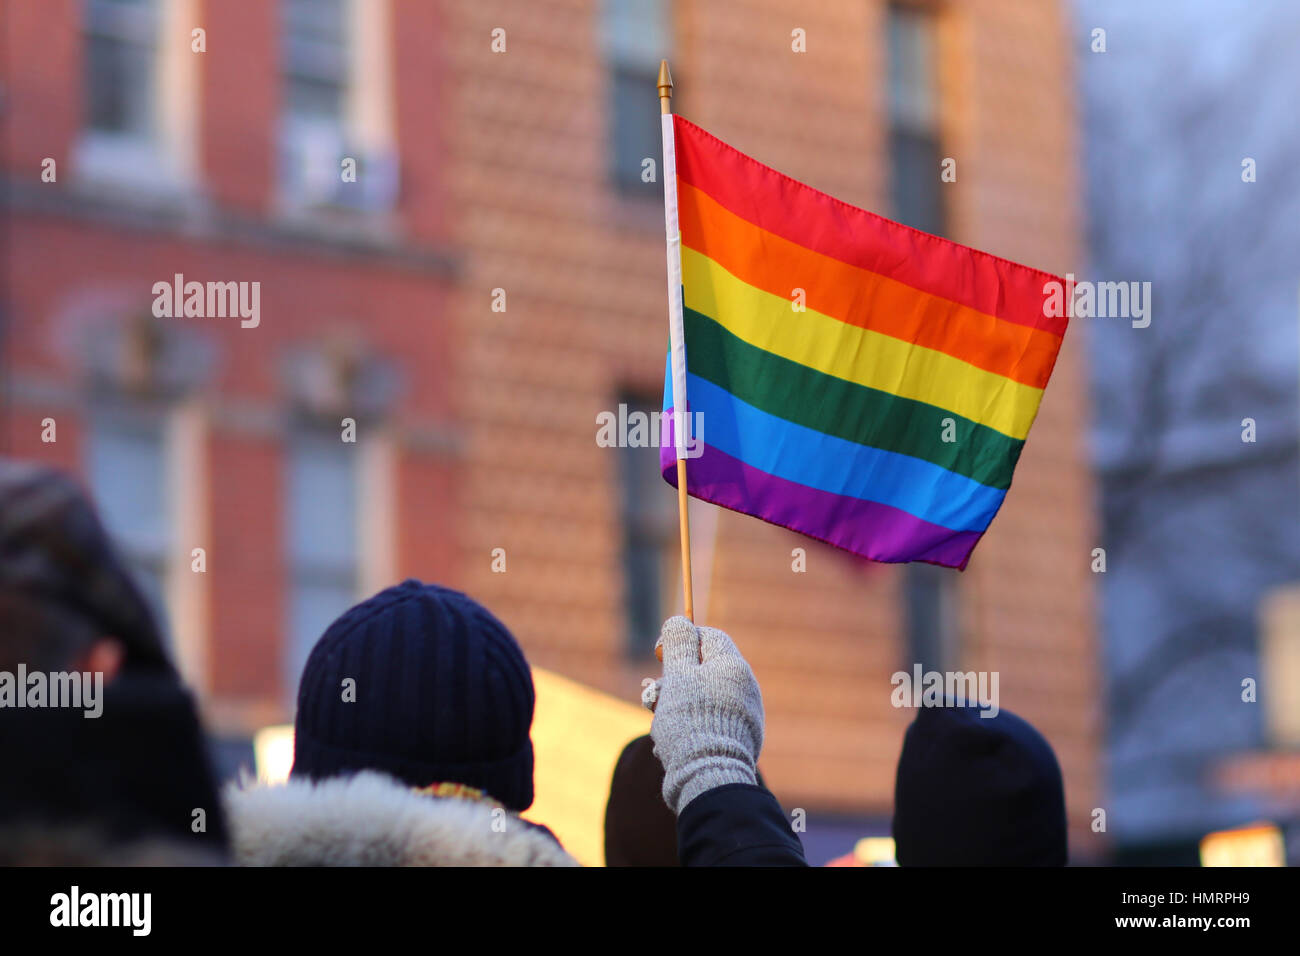 New York, USA. Februar 2017. Eine Person winkt mit einer stolzen Fahne, um Solidarität mit den von der jüngsten Politik Donald Trumps betroffenen Menschen zu zeigen. Februar 2017 Stockfoto